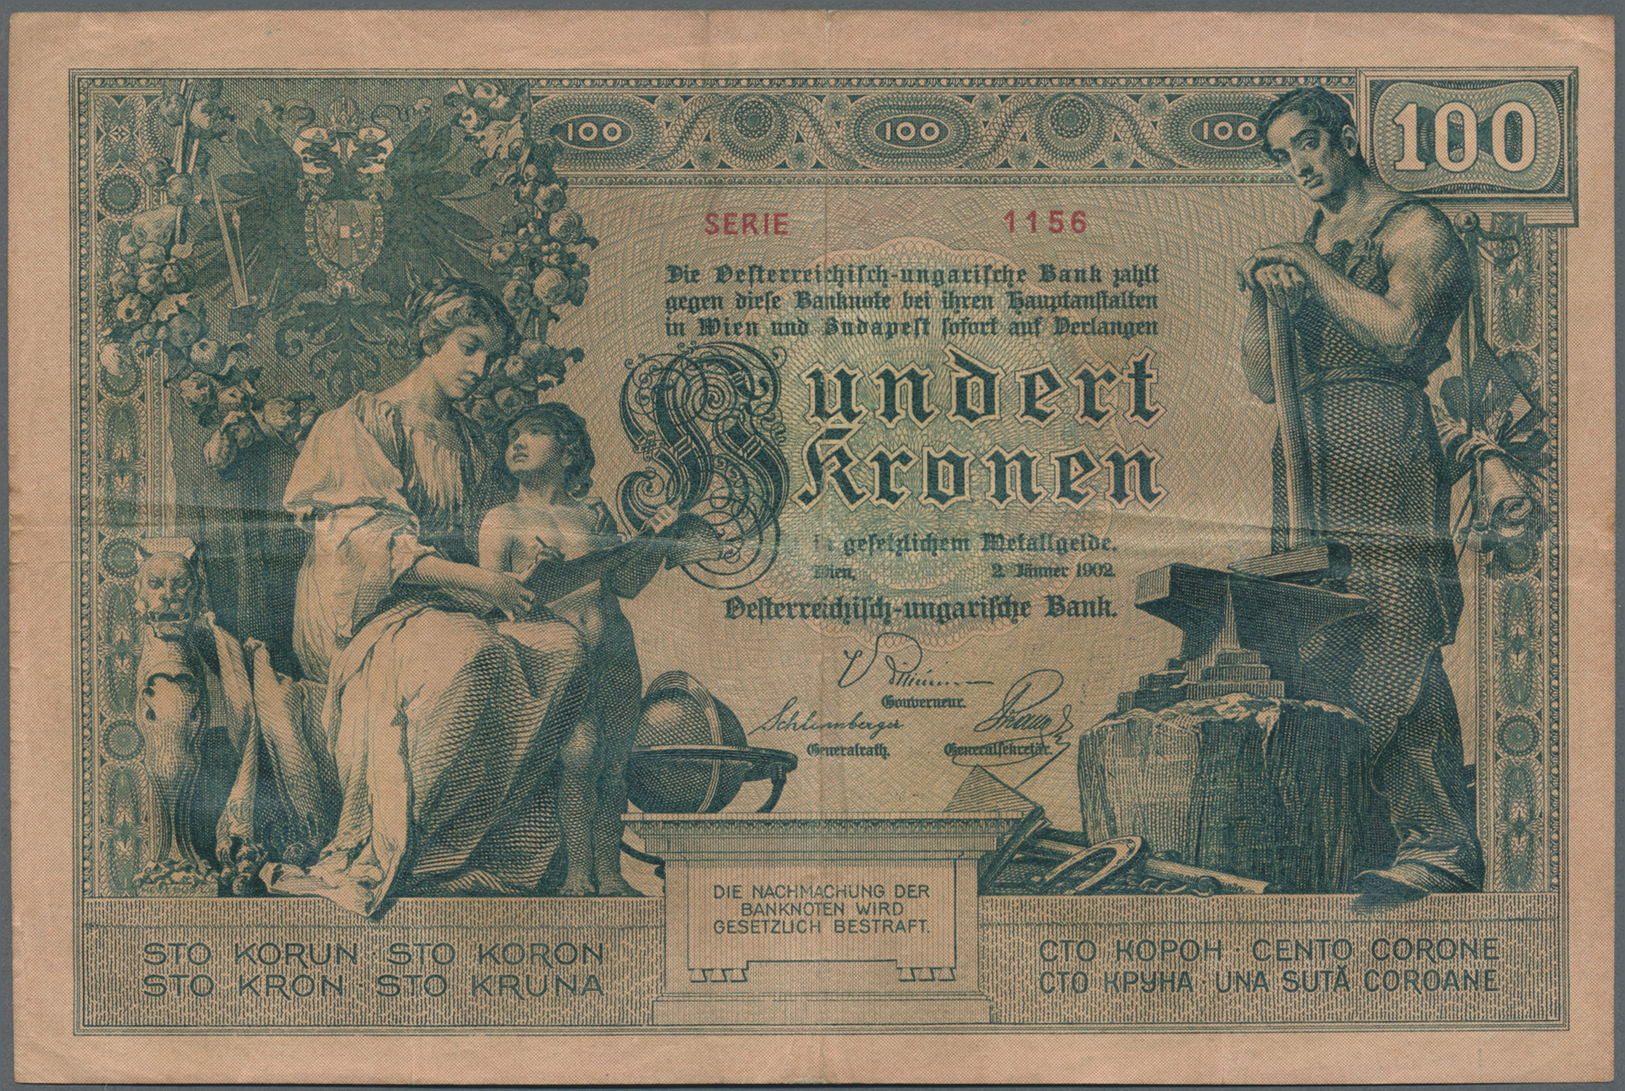 00169 Austria / Österreich: Oesterreichisch-ungarische Bank / Osztrak-magyar Bank 100 Kronen 1902, P.7, Highly Rare Note - Austria